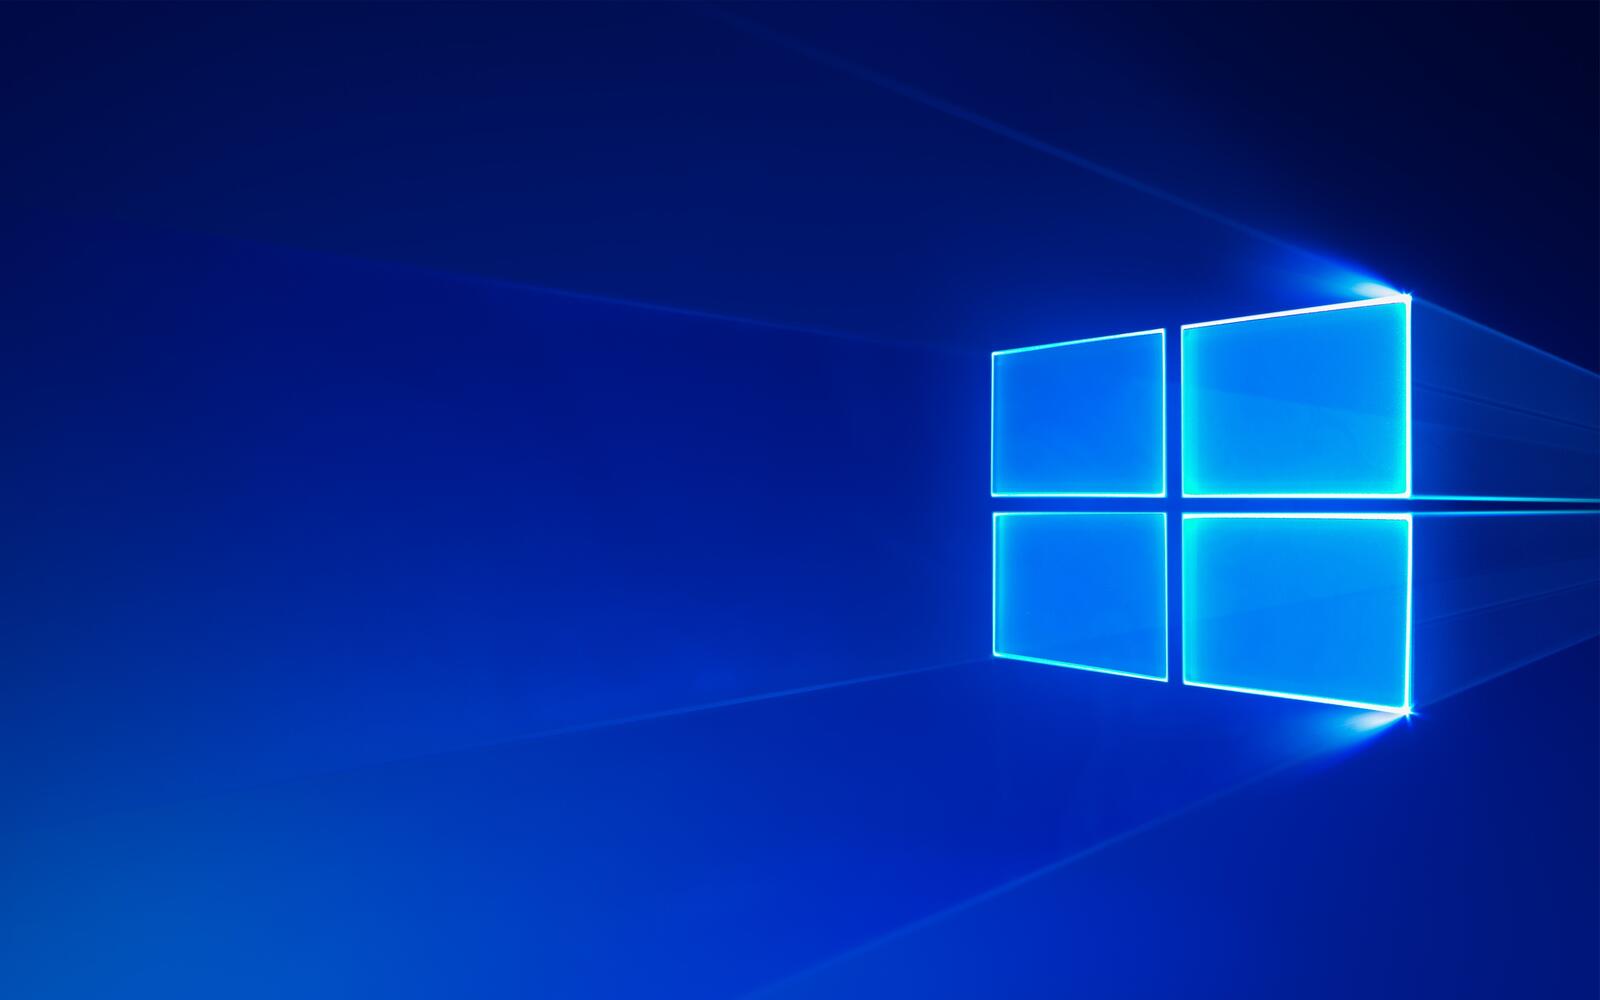 Стоковое фото заставки Windows 10 синего цвета